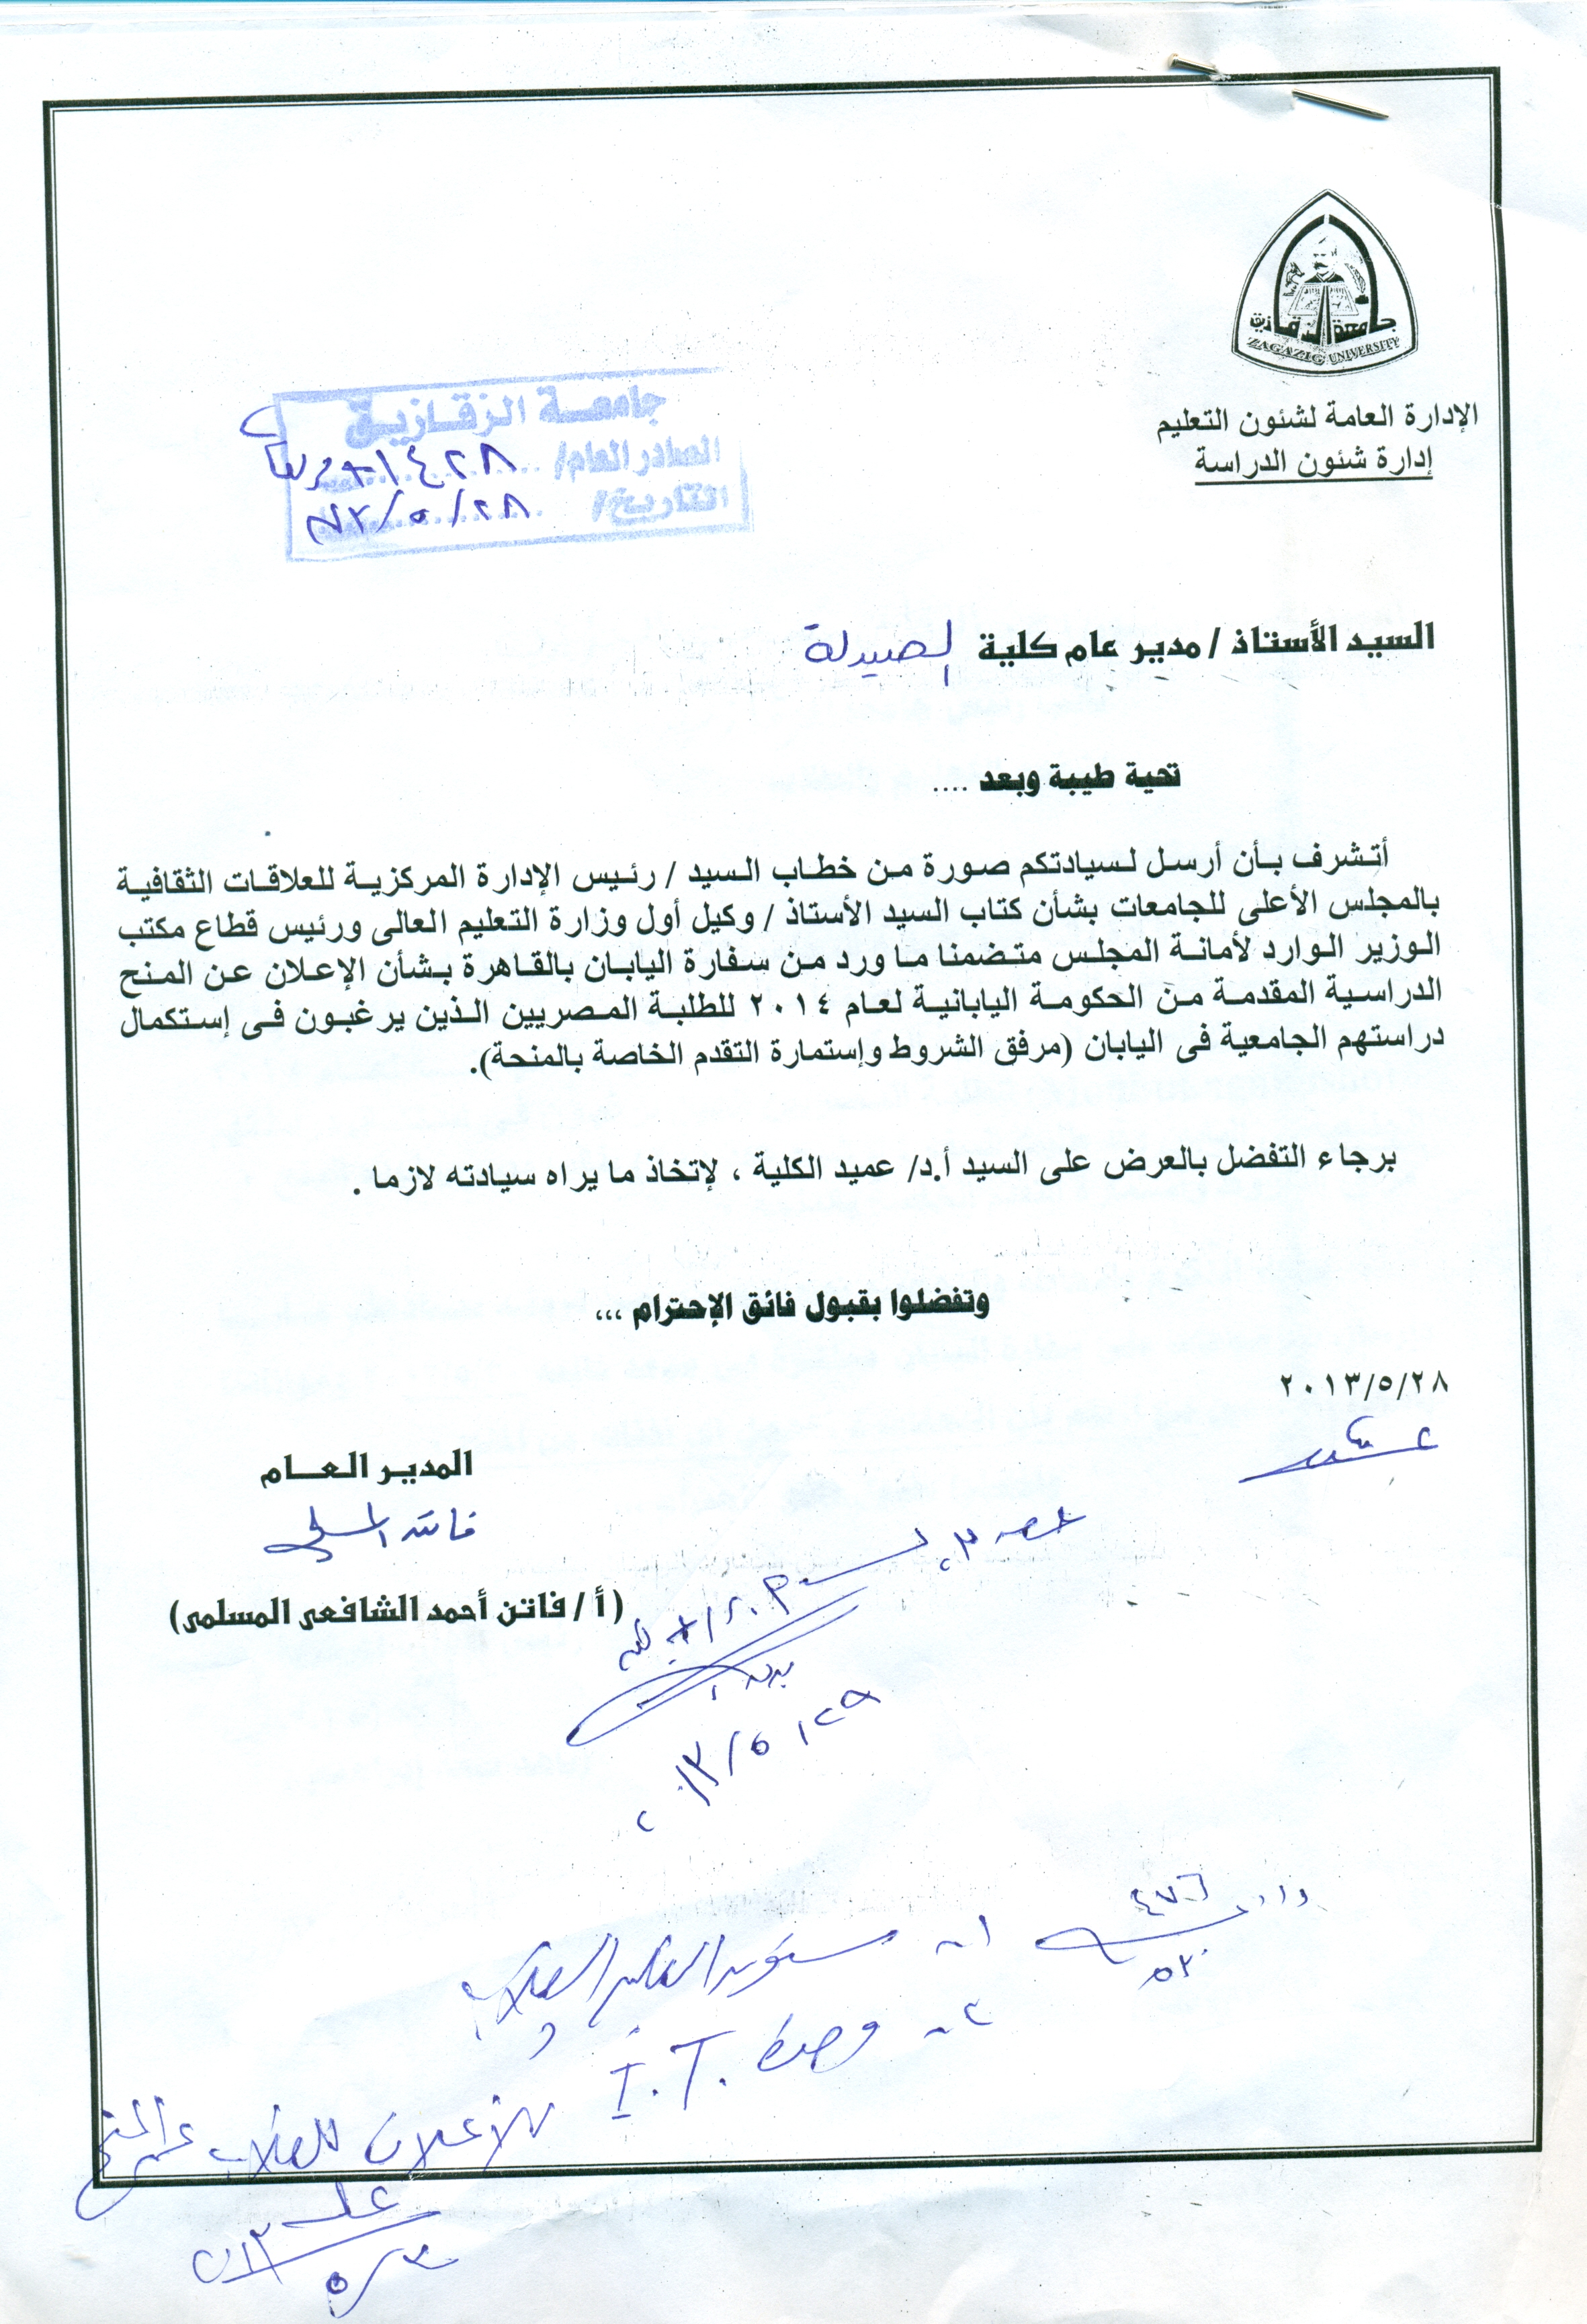 إعلان عن منح مقدمة من الحكومة اليابانية للطلبة المصريين لعام 2014